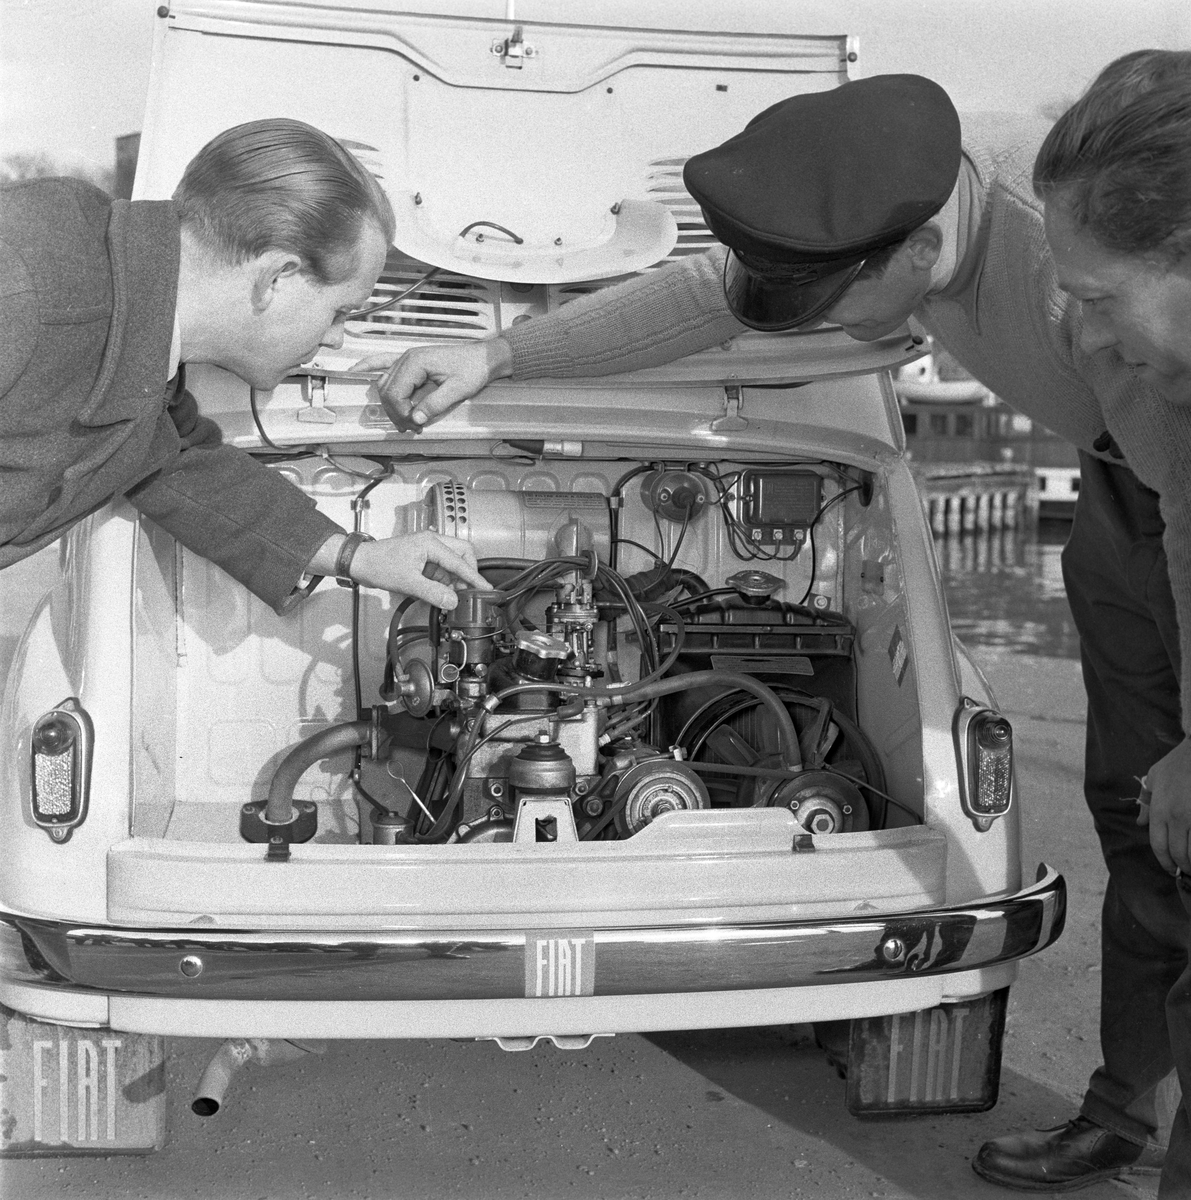 Serie. Test av bilmodellen Fiat 600. Fotografert oktober 1958. 

